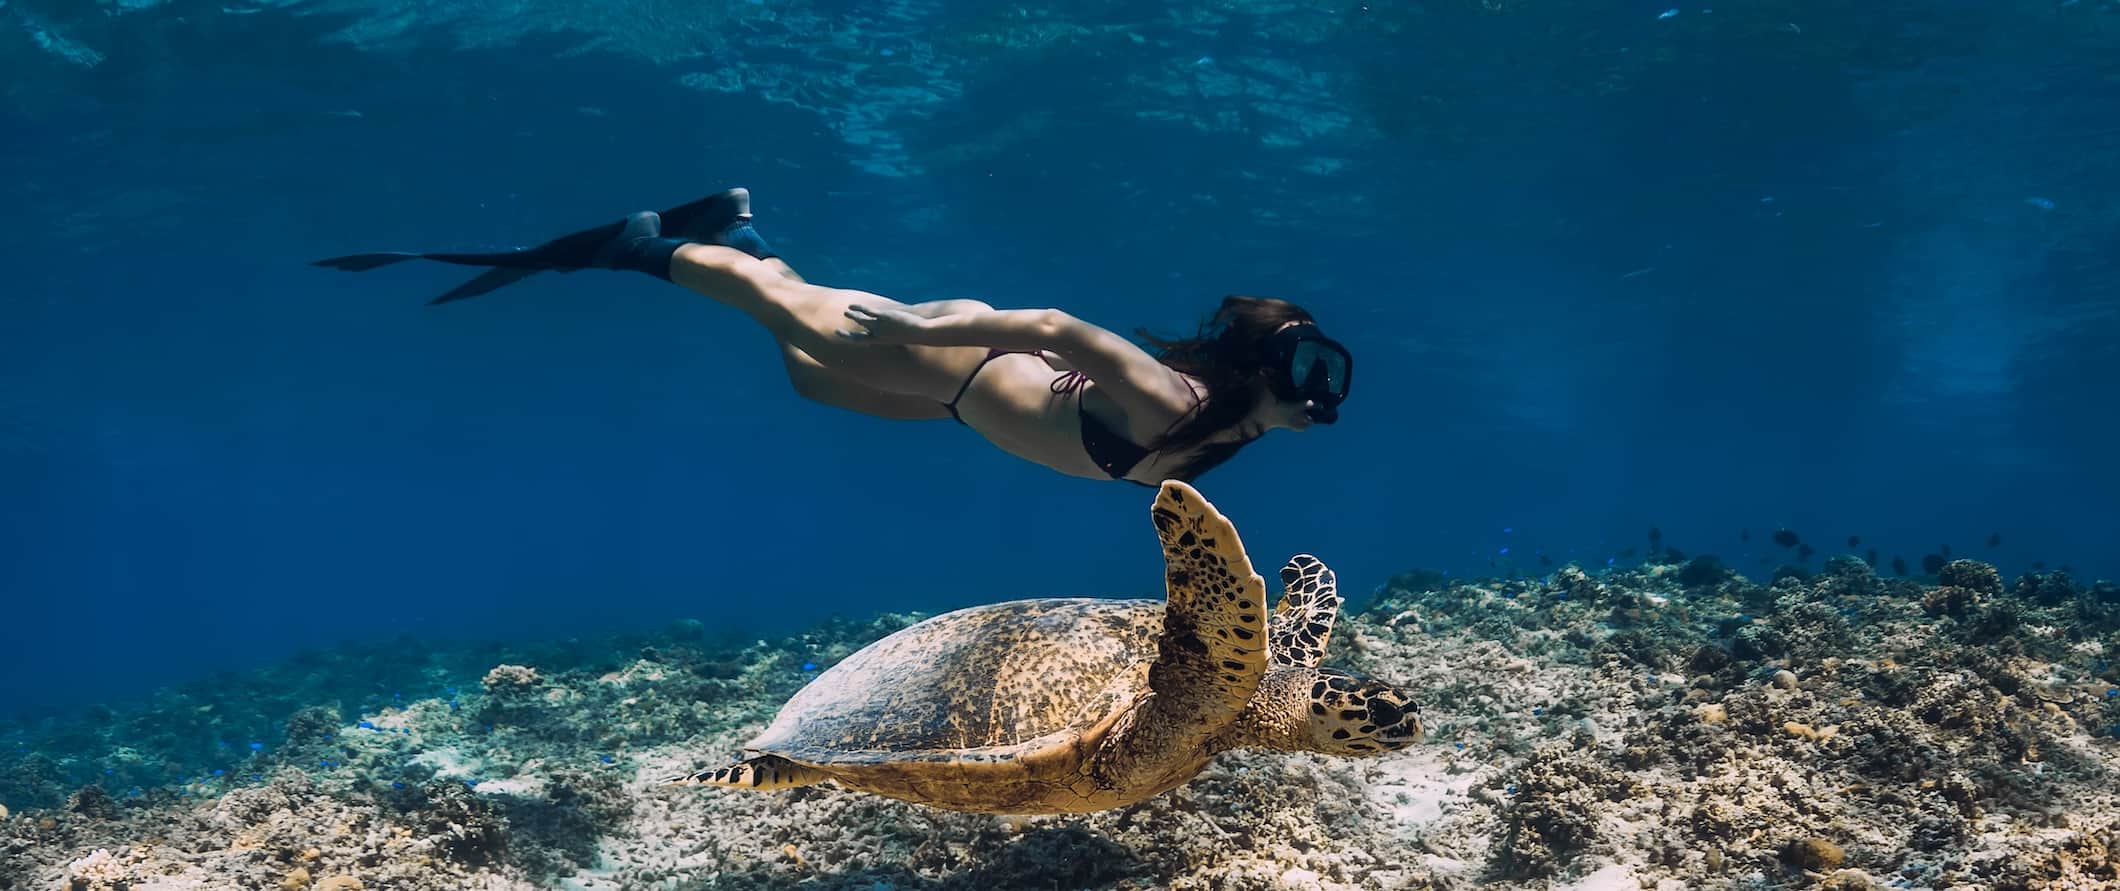 Uma mulher nada com uma tartaruga marinha debaixo d'água nas ilhas Gili, Indonésia